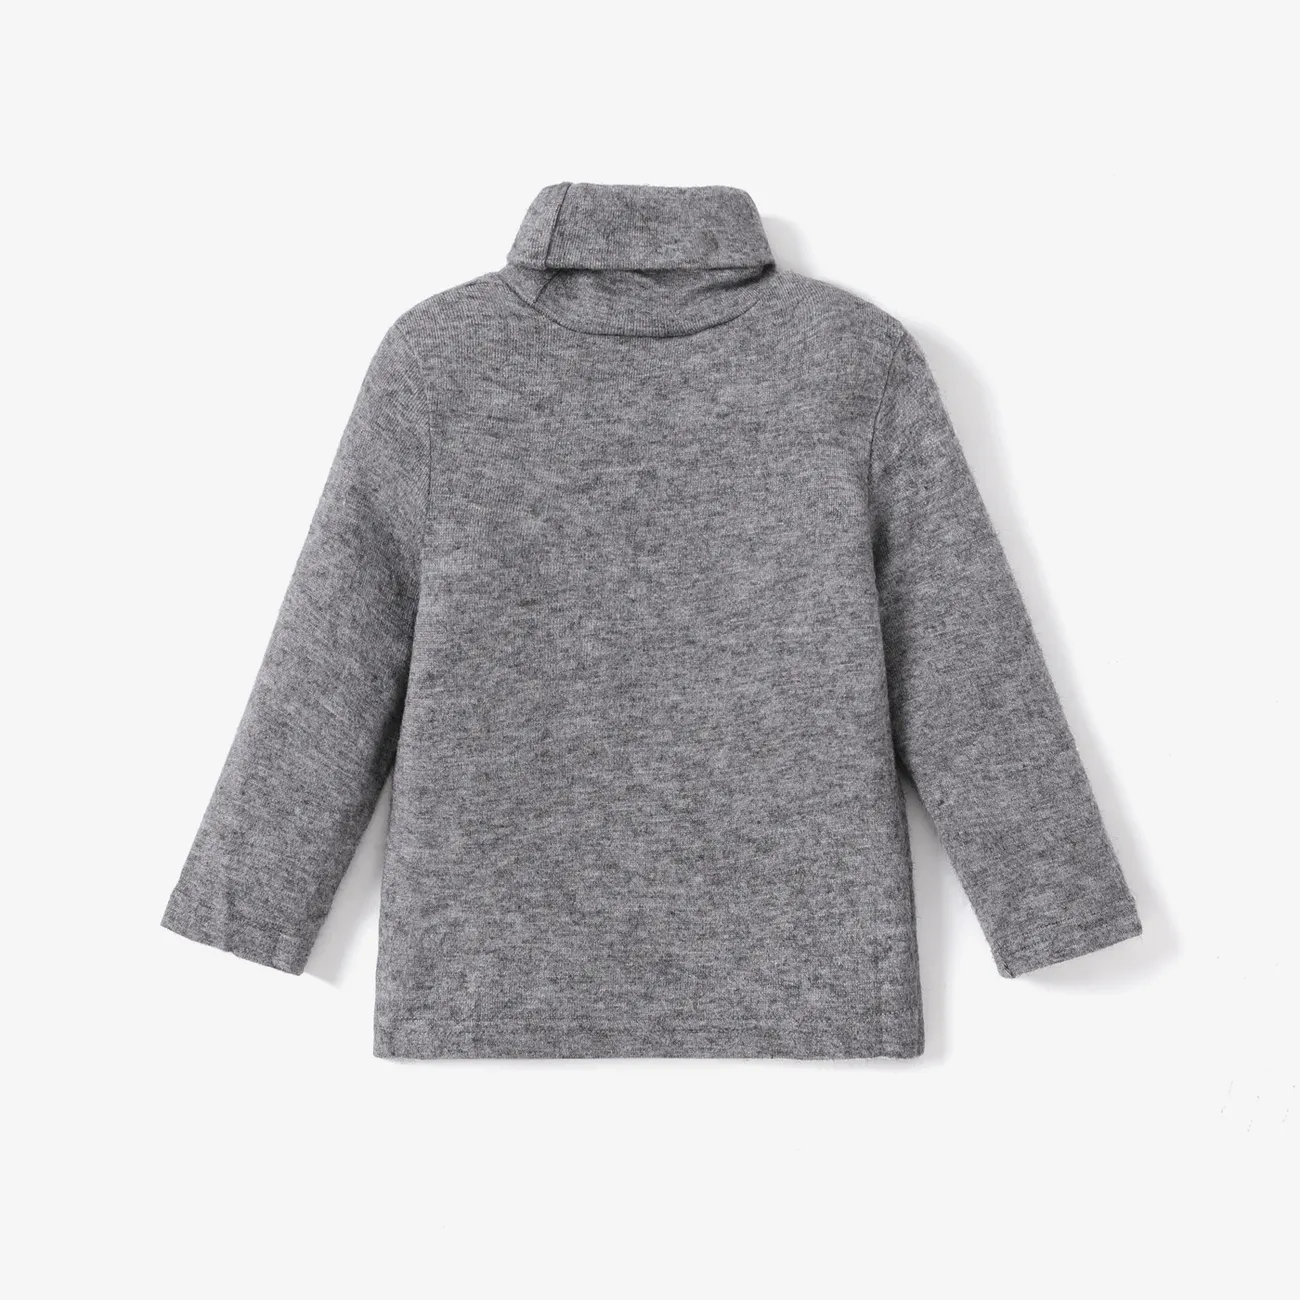 Toddler Girl/Boy Turtleneck Cashmere Solid Knit Sweater Grey big image 1